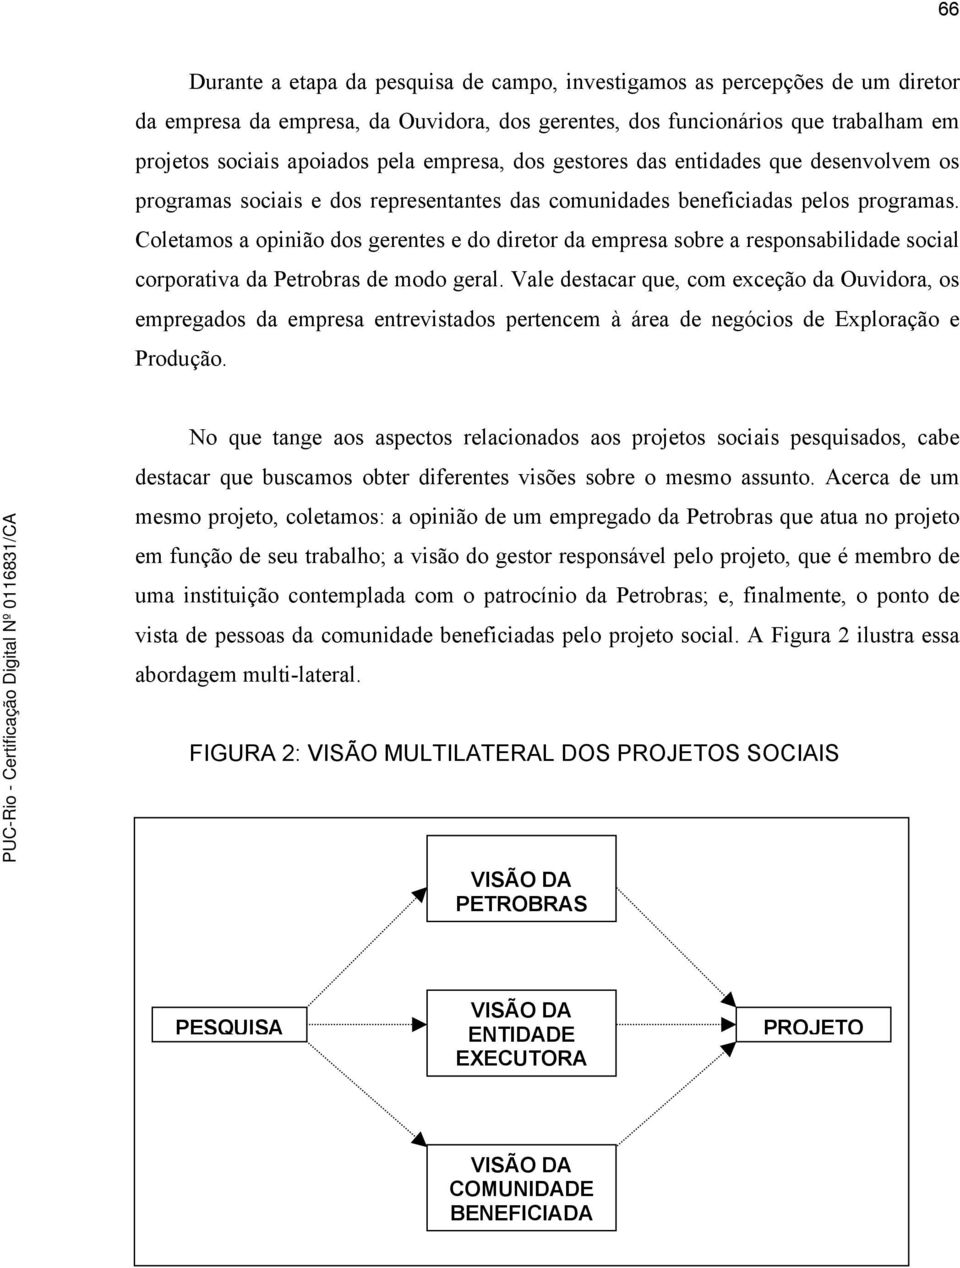 Coletamos a opinião dos gerentes e do diretor da empresa sobre a responsabilidade social corporativa da Petrobras de modo geral.